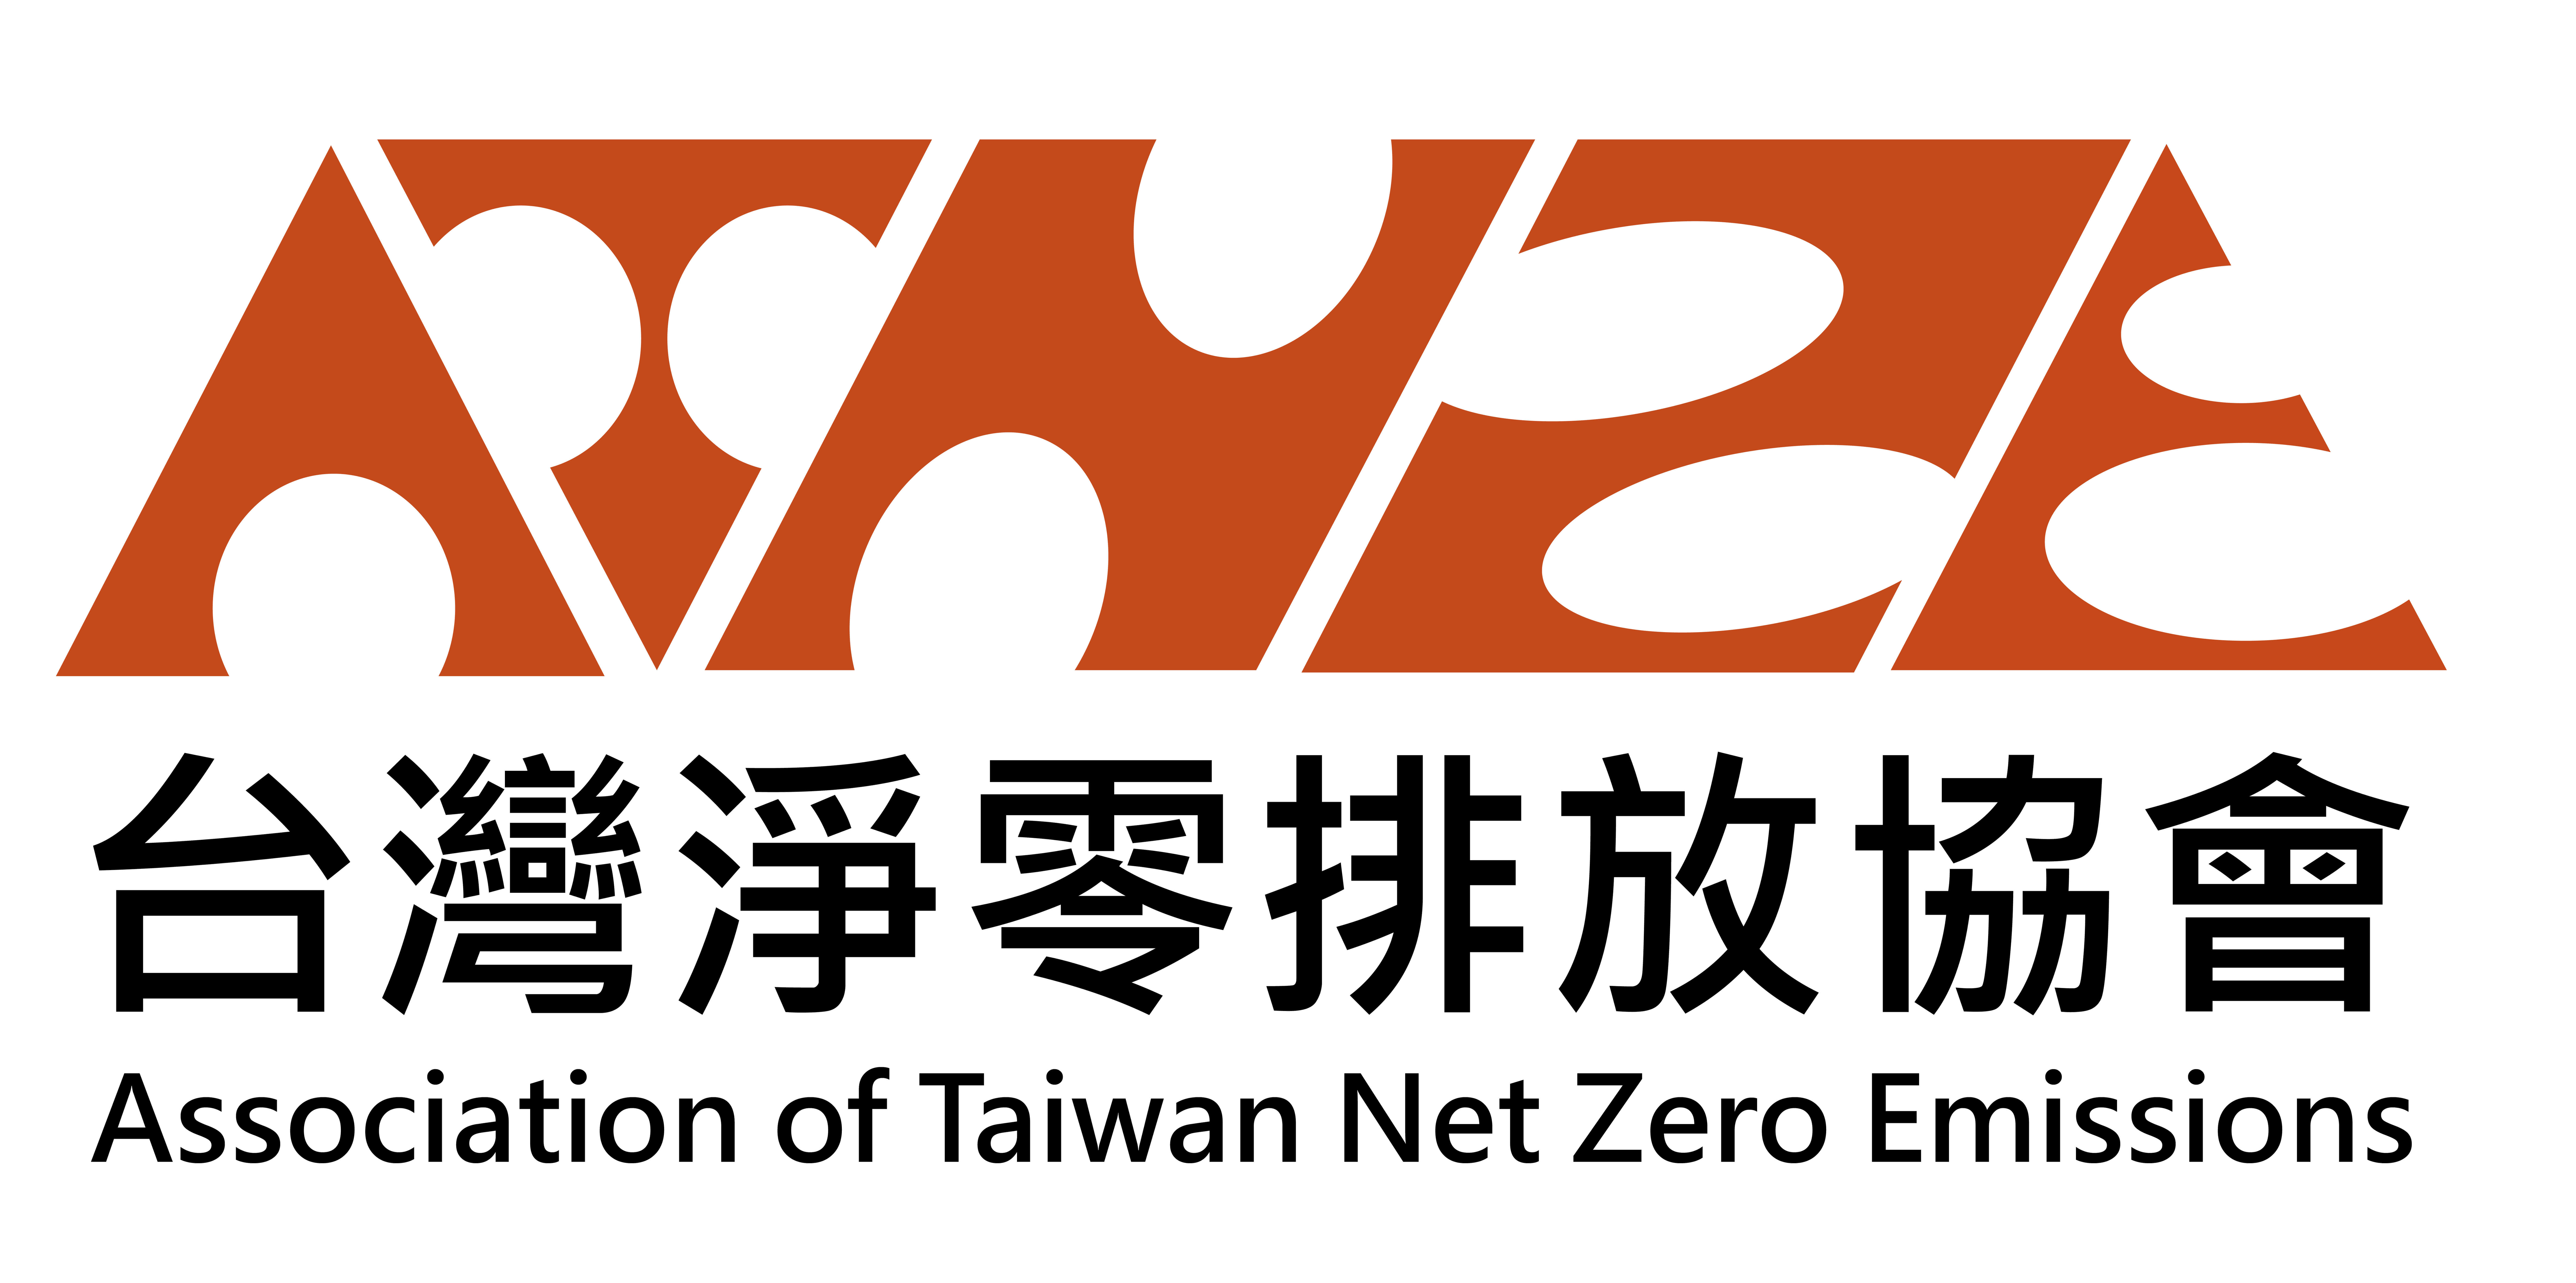 台灣淨零排放協會